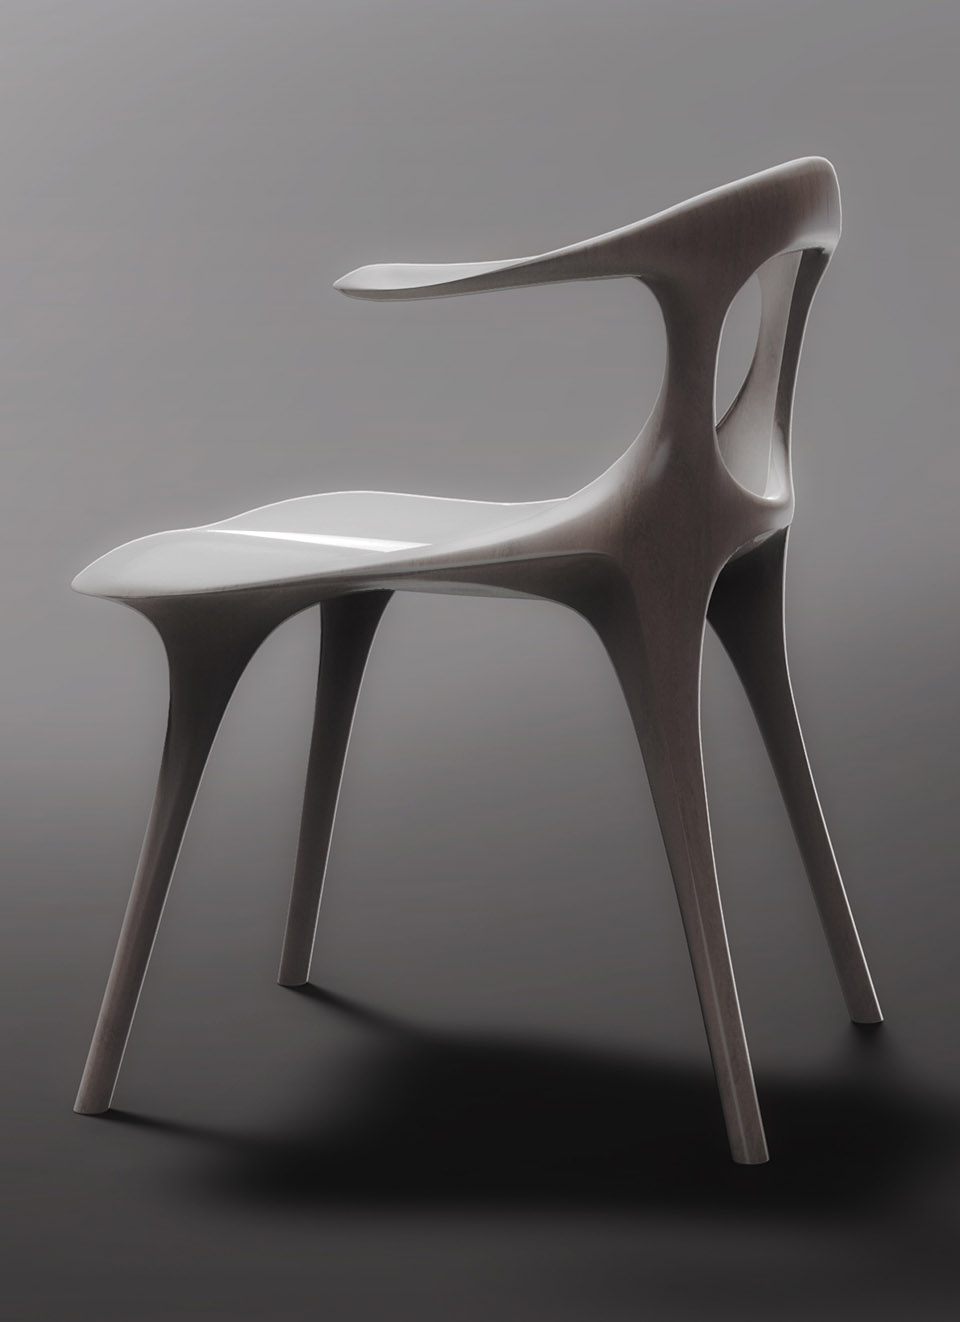 MAD携“骨椅”“平潭”“天镜”三件作品参展2018米兰设计周/有机自然的设计，与天地互动。-1